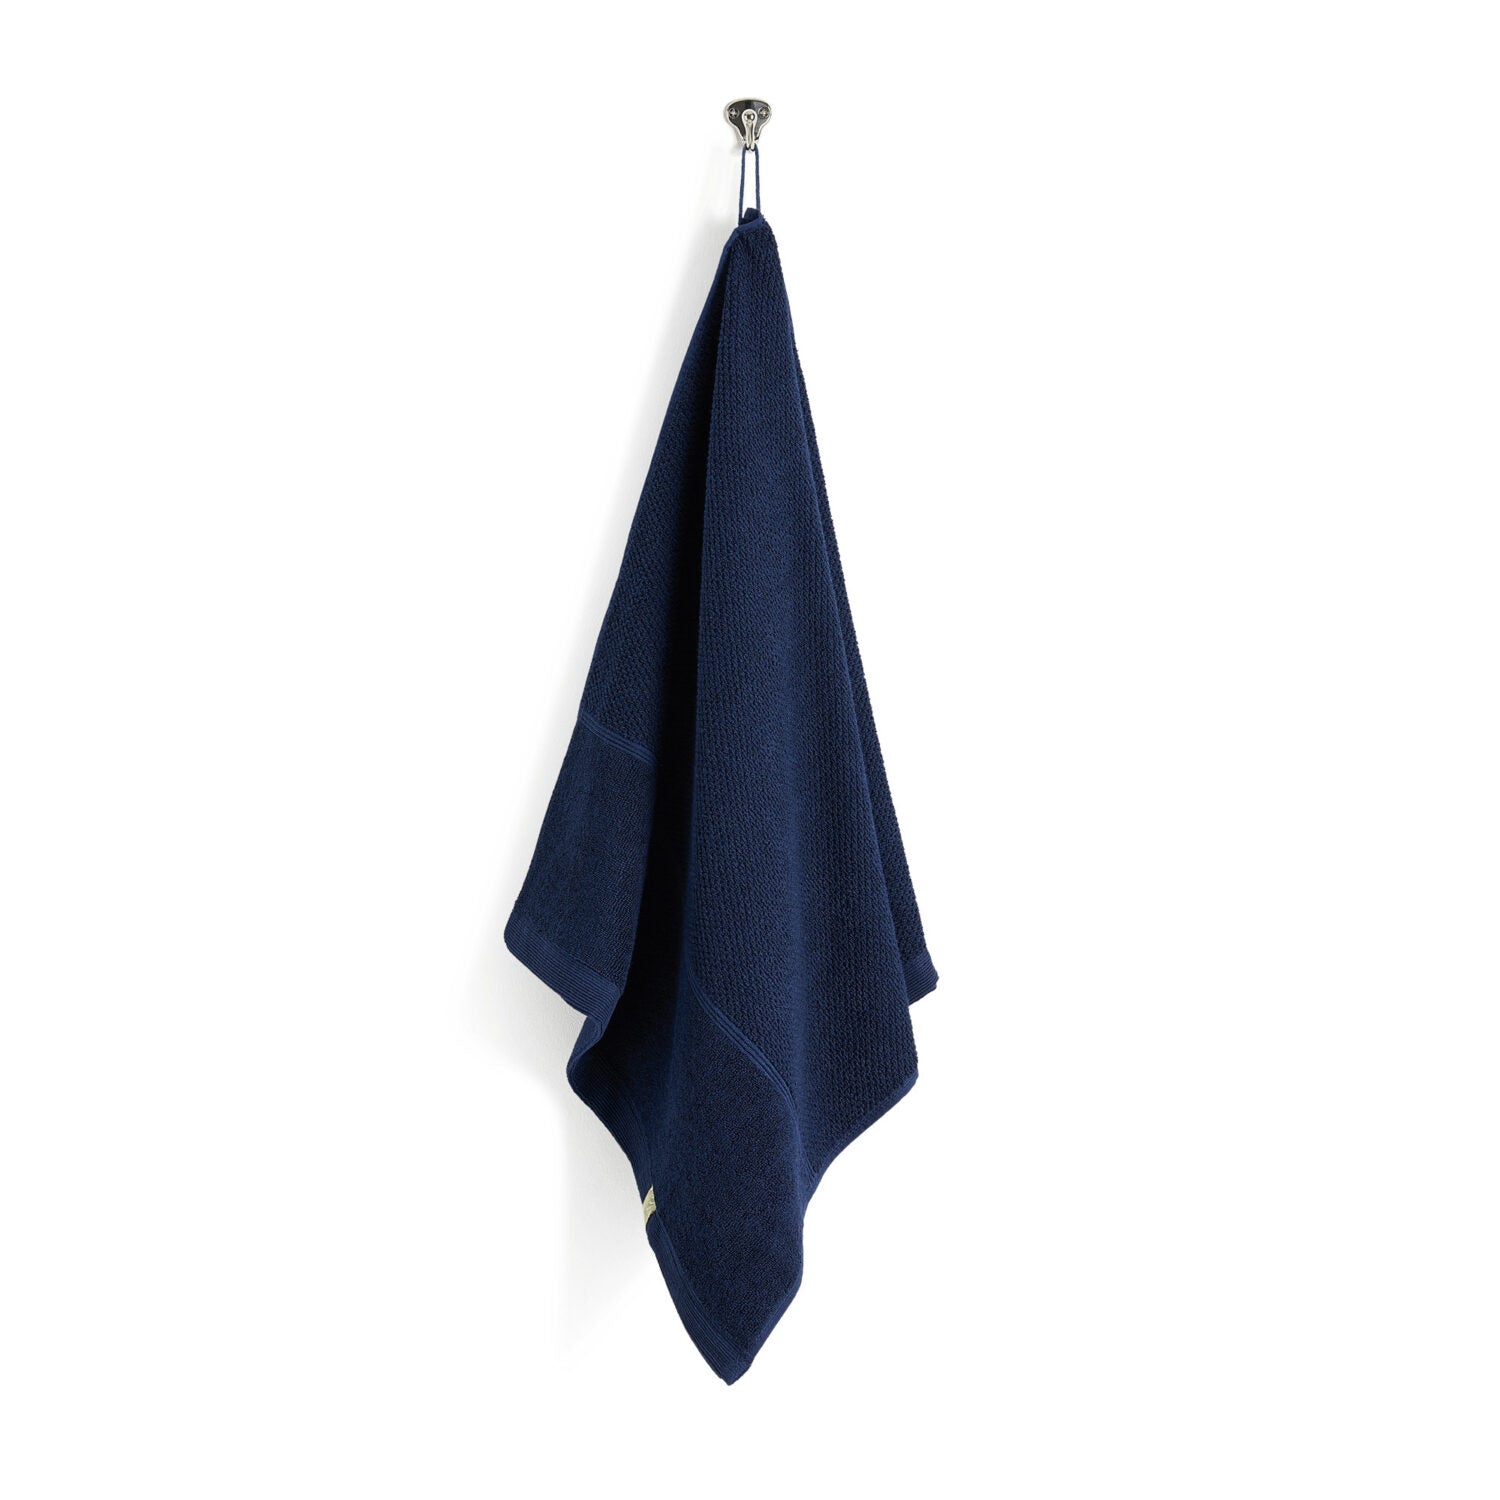 Kushel Handtuch The Hand Towel - verschiedene Farben_ocean-blue2